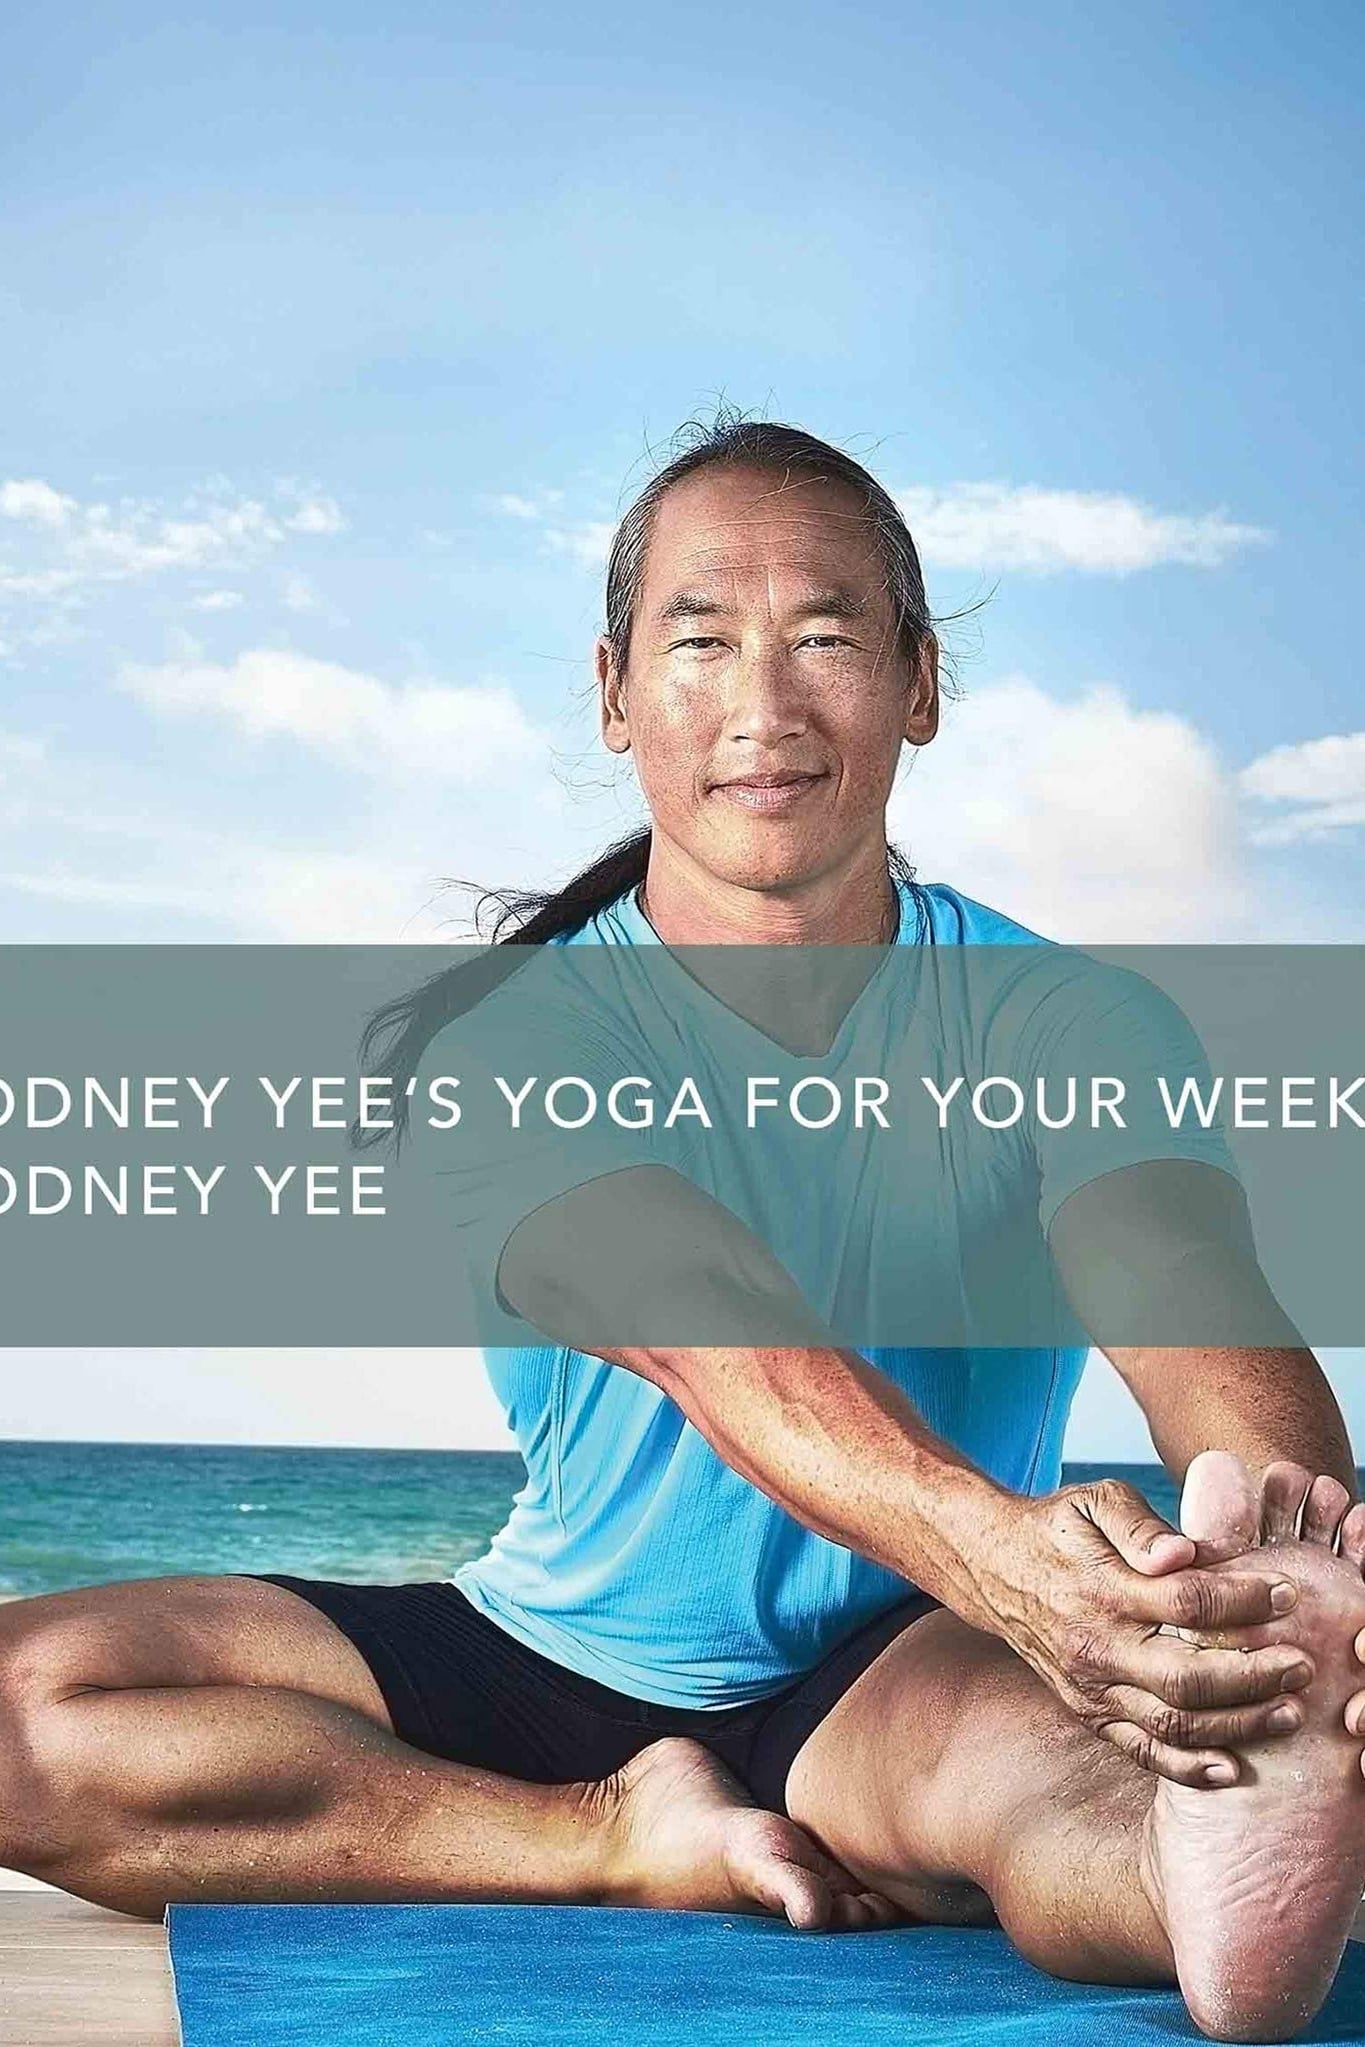 Rodney Yee's Yoga for Your Week: Energy